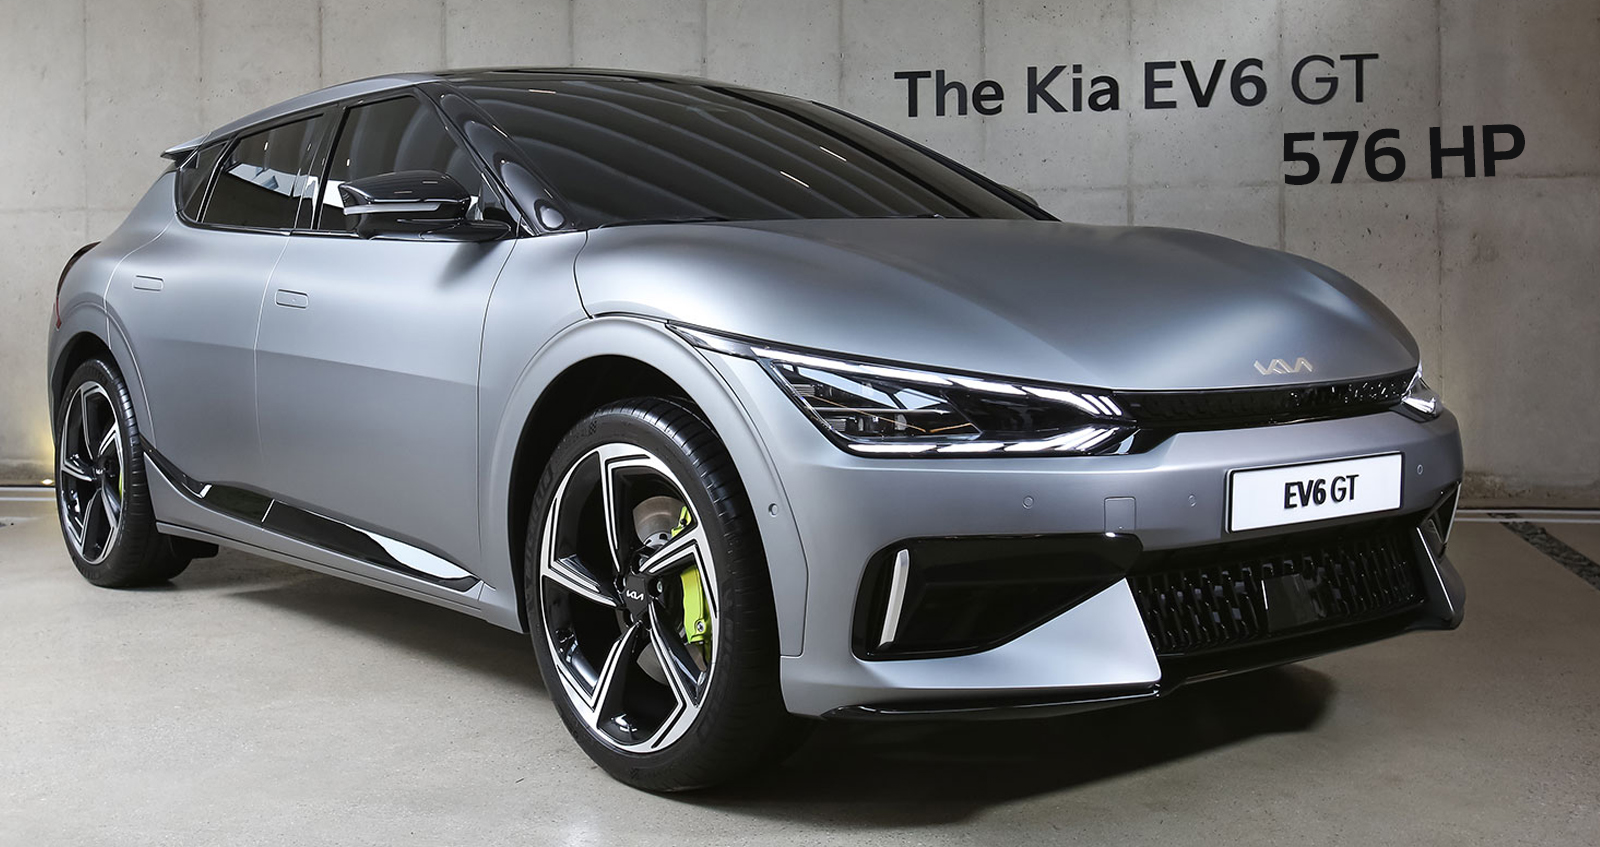 KIA EV6 GT ไฟฟ้าตัวแรงสุด 576 แรงม้า ราคาแรงถึง 2.55 ล้านบาท วิ่งได้ 520 กม./ชาร์จ WLTP